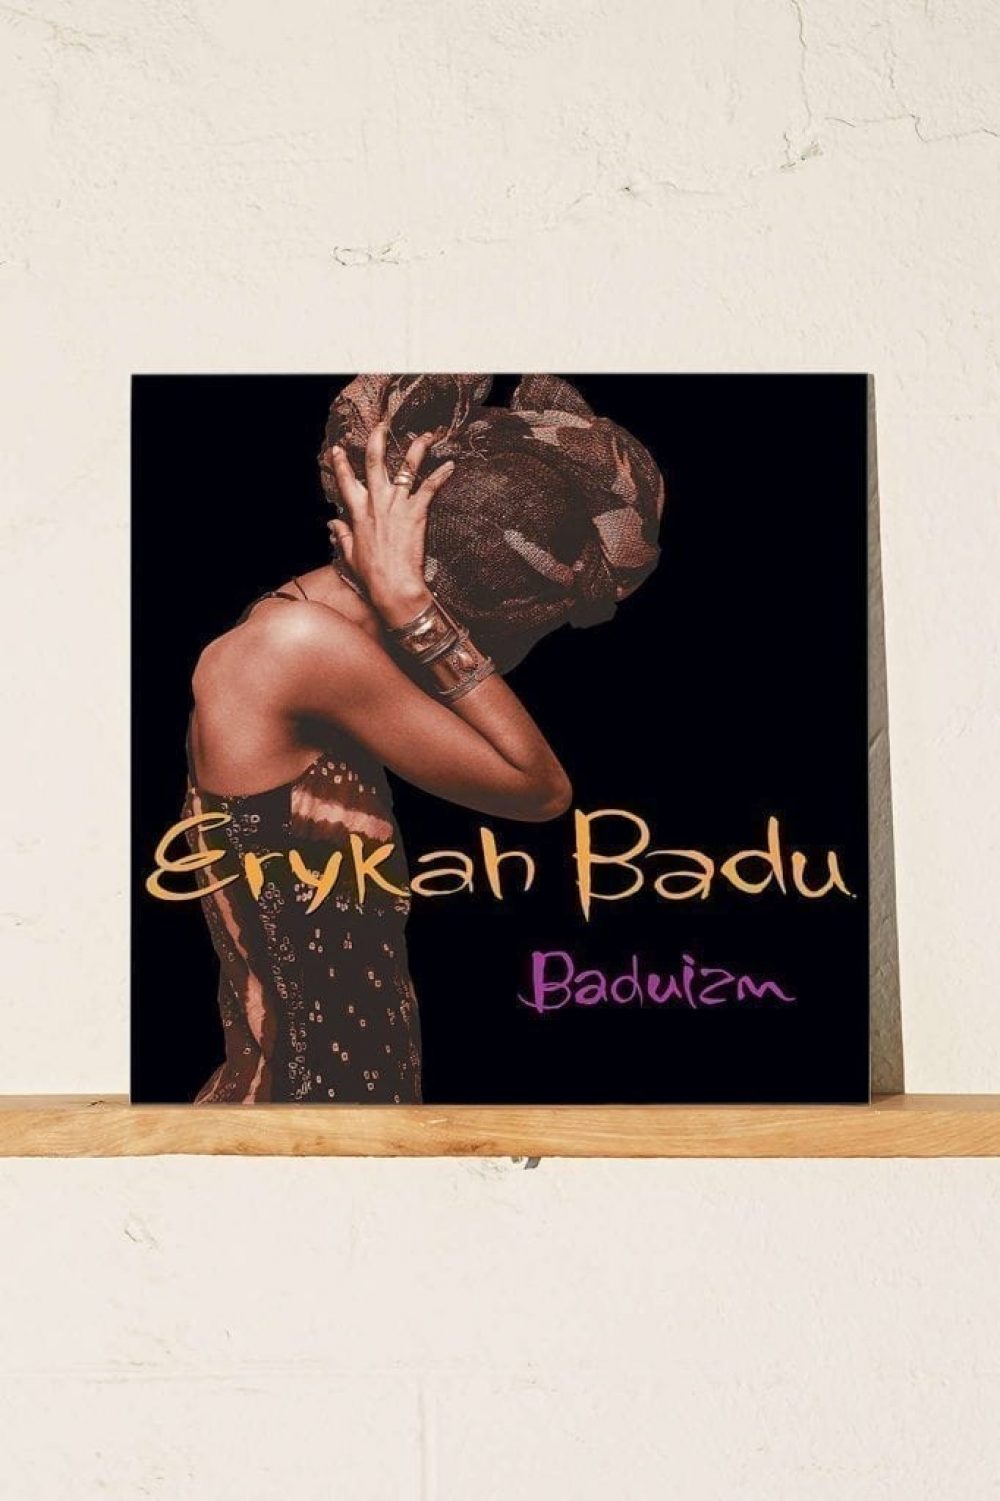 Erykah-Badu-Baduizm-Vinyl-Baduism